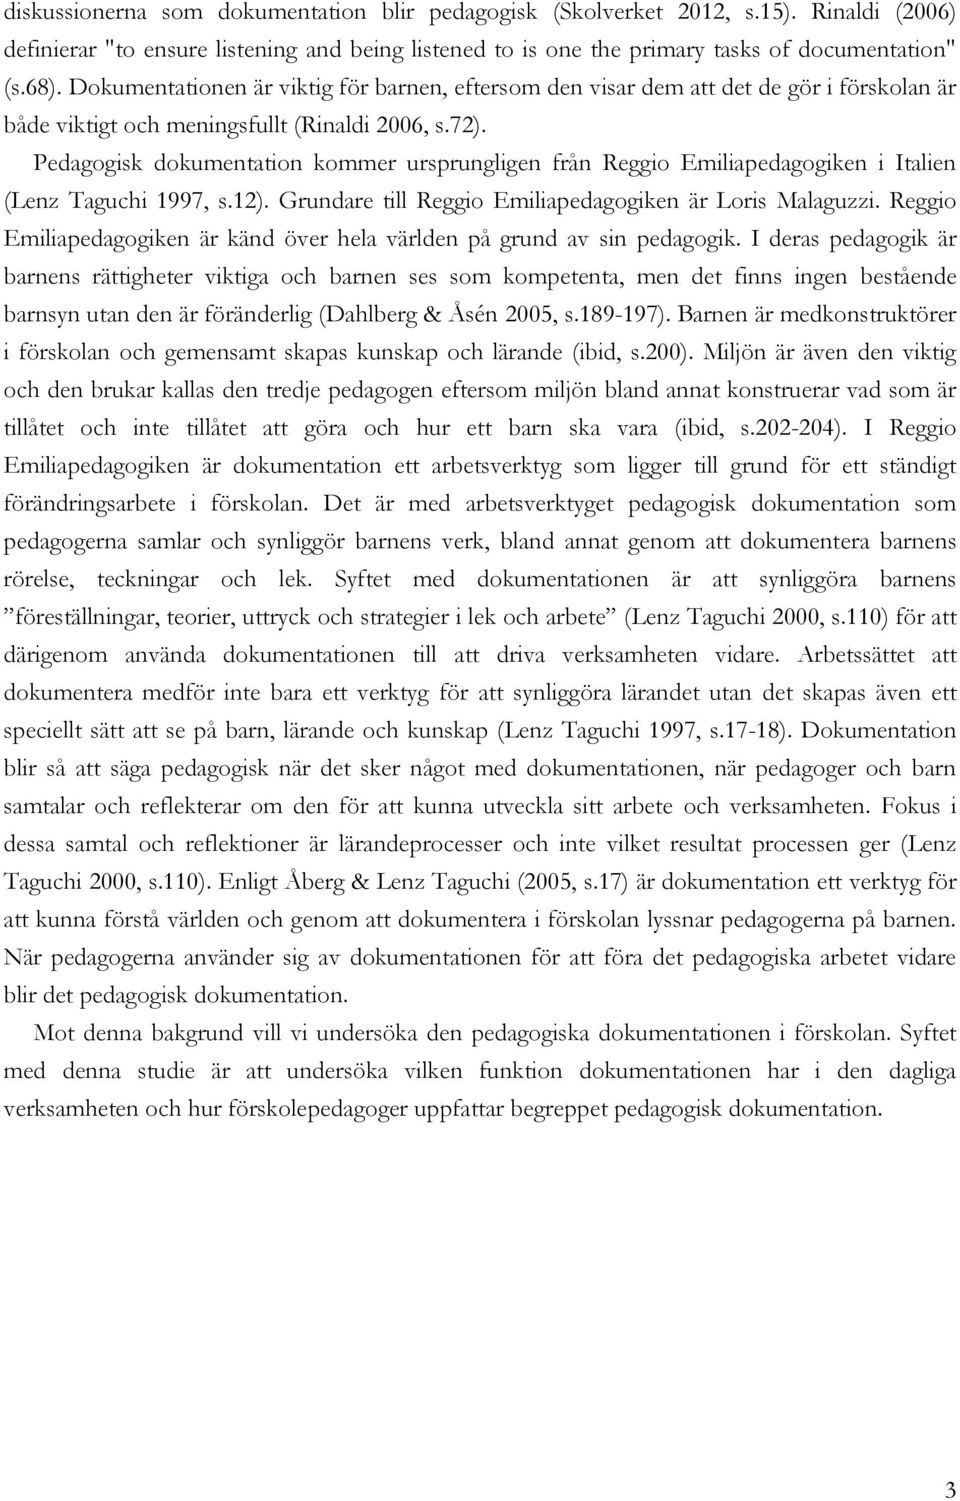 Pedagogisk dokumentation kommer ursprungligen från Reggio Emiliapedagogiken i Italien (Lenz Taguchi 1997, s.12). Grundare till Reggio Emiliapedagogiken är Loris Malaguzzi.